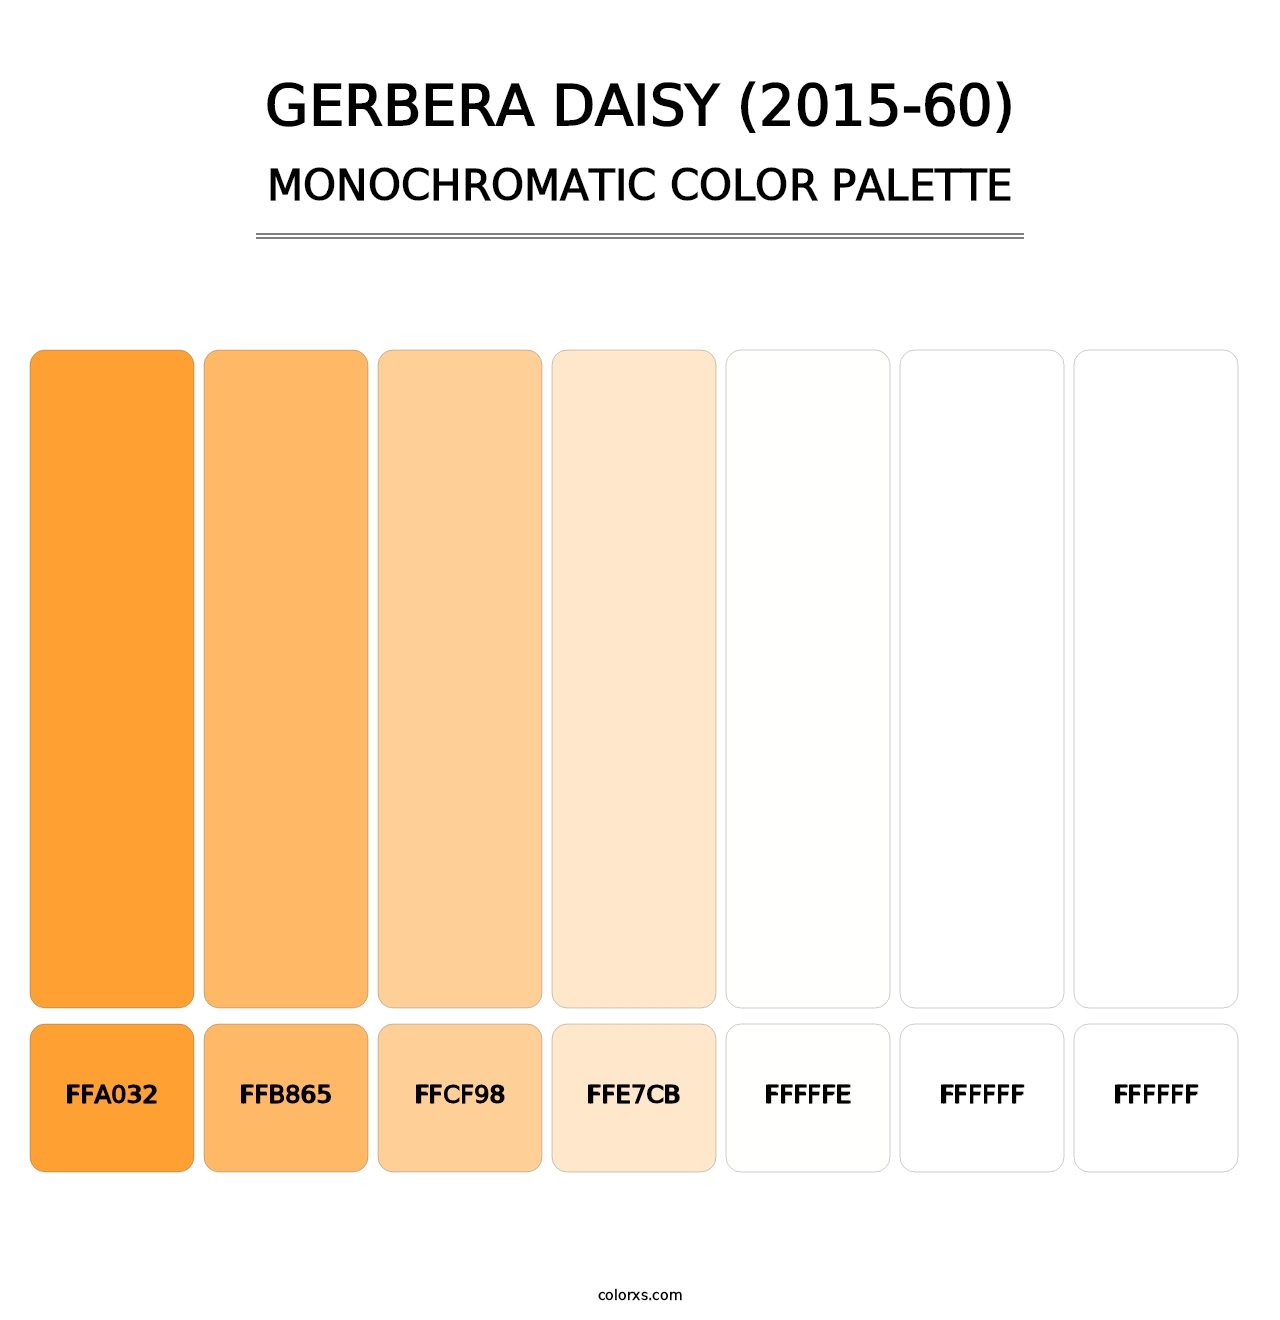 Gerbera Daisy (2015-60) - Monochromatic Color Palette